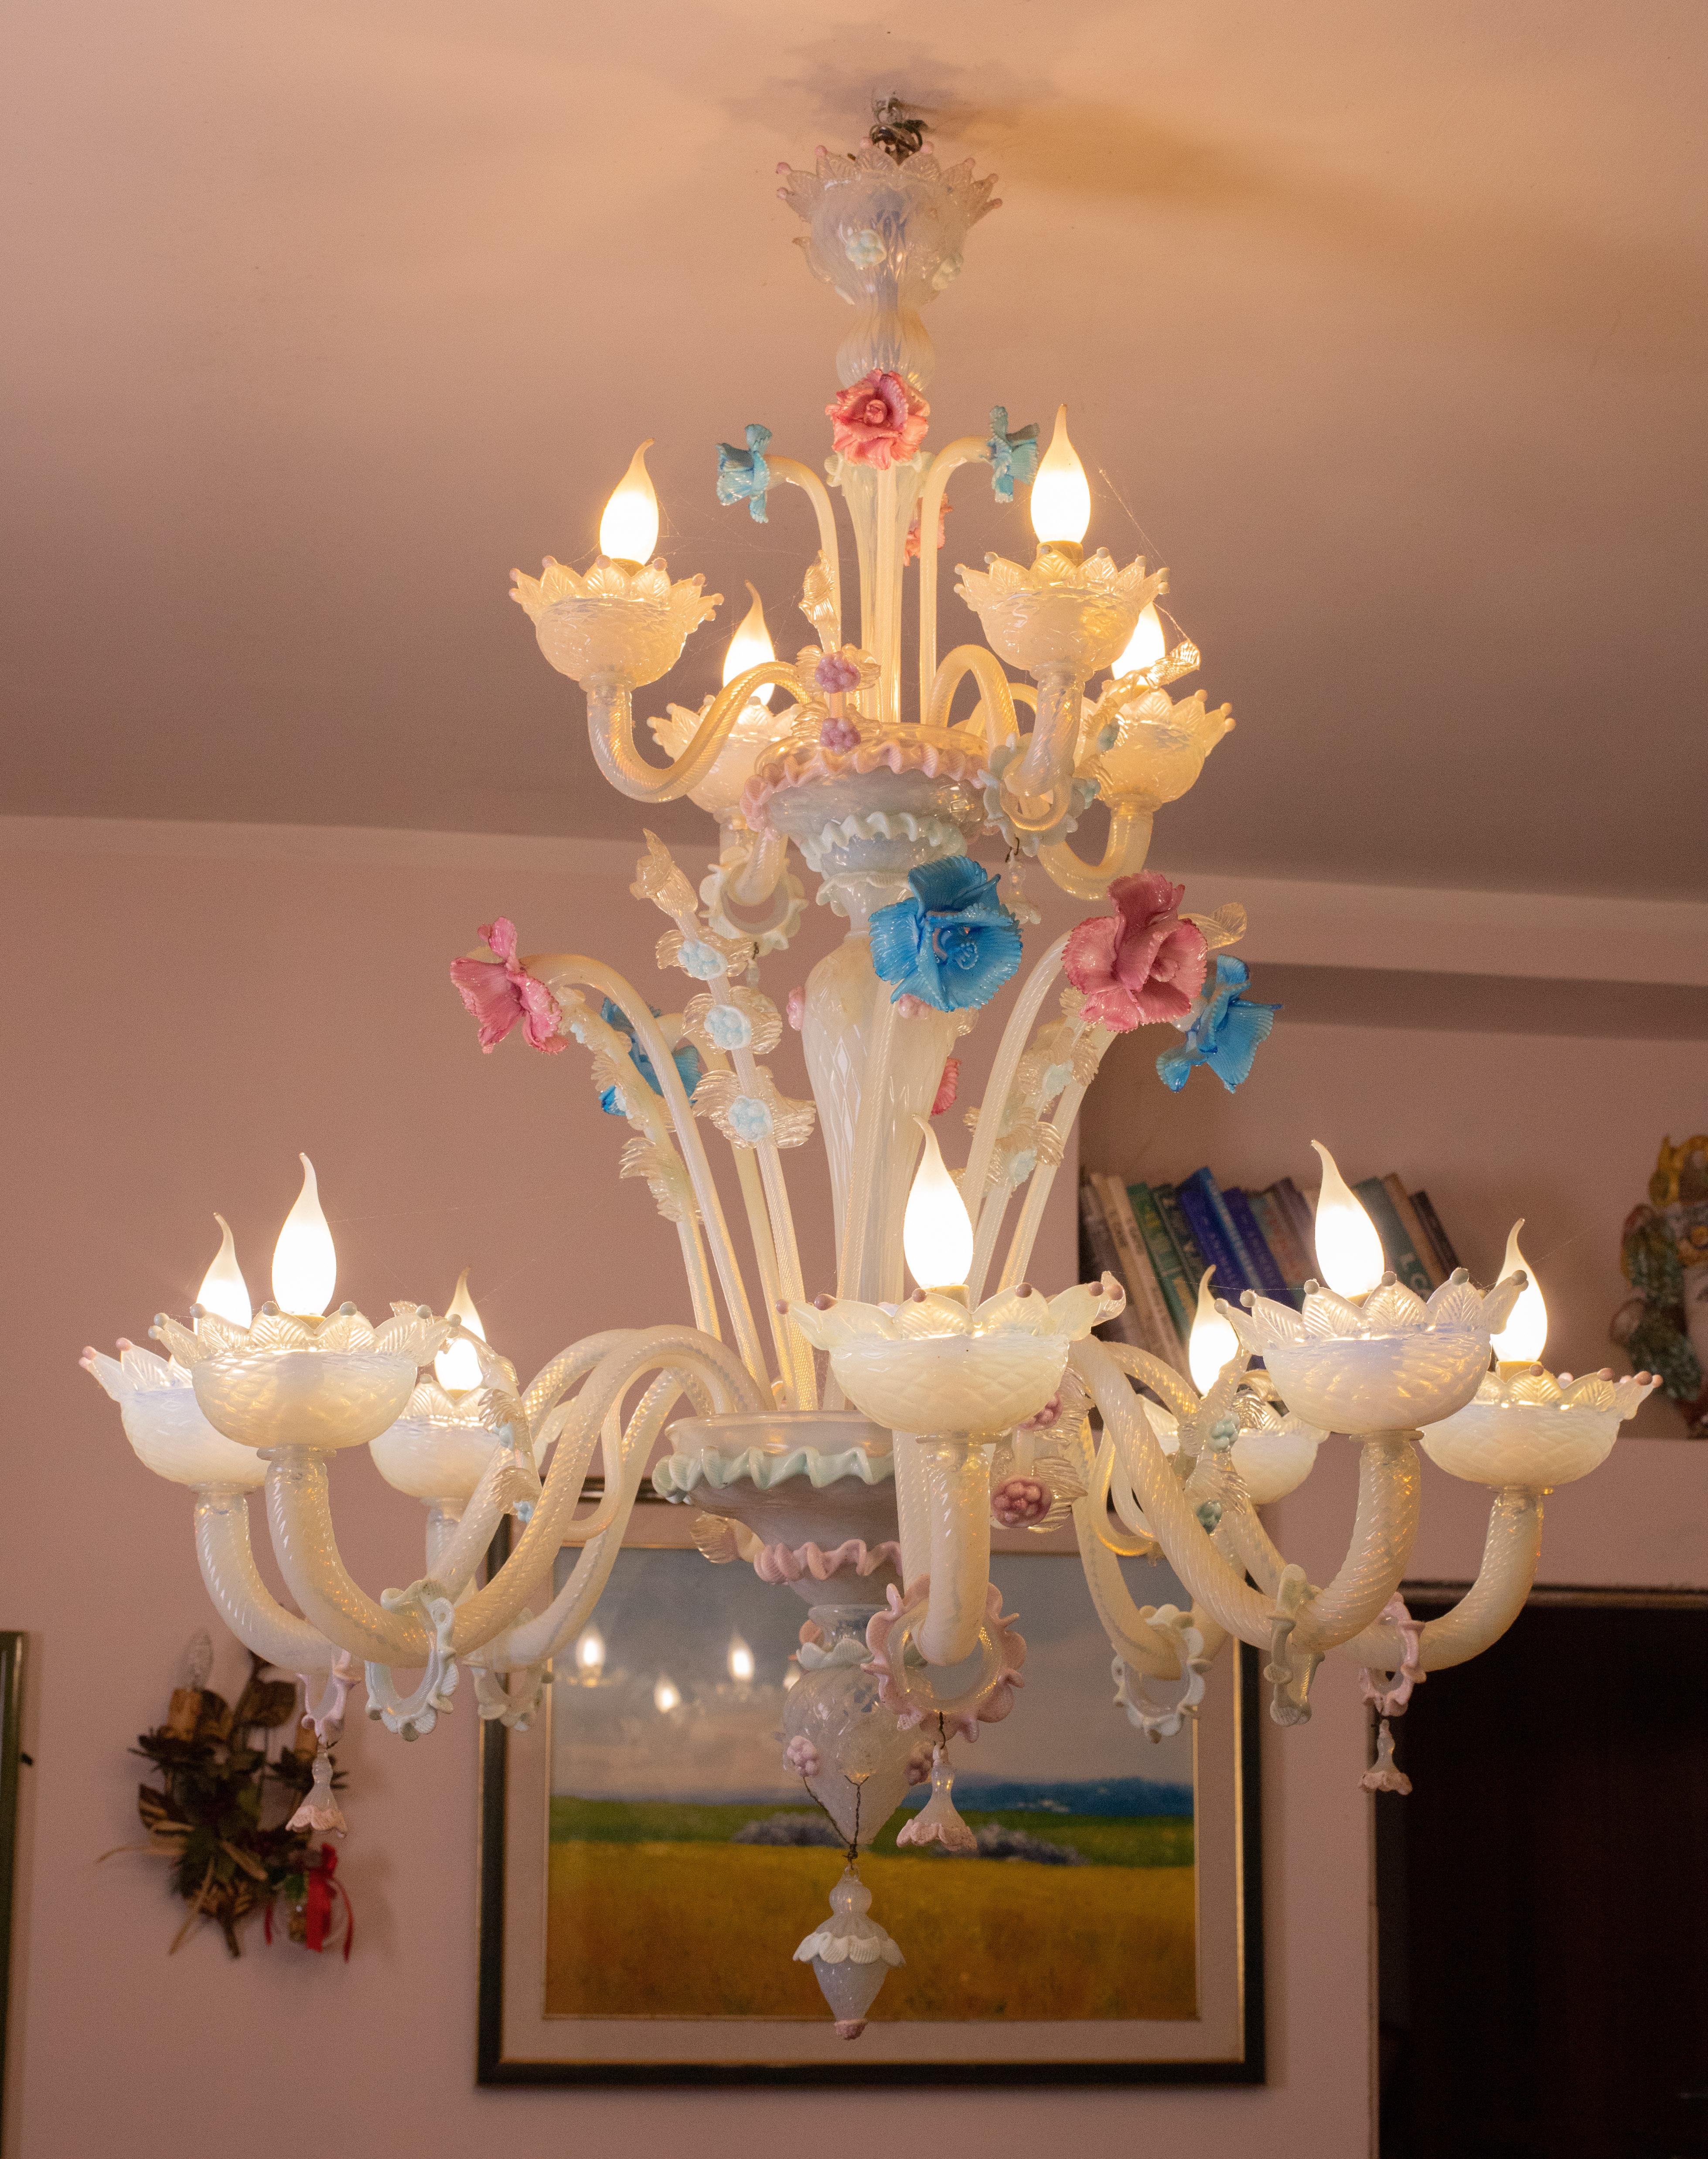 Merveilleux lustre Murano de couleur opaline formé par 12 bras avec 12 points lumineux.

Le lustre est riche en décorations, composé de 12 magnifiques fleurs roses et bleues.

Le lustre convient de préférence aux grands espaces tels que les salons